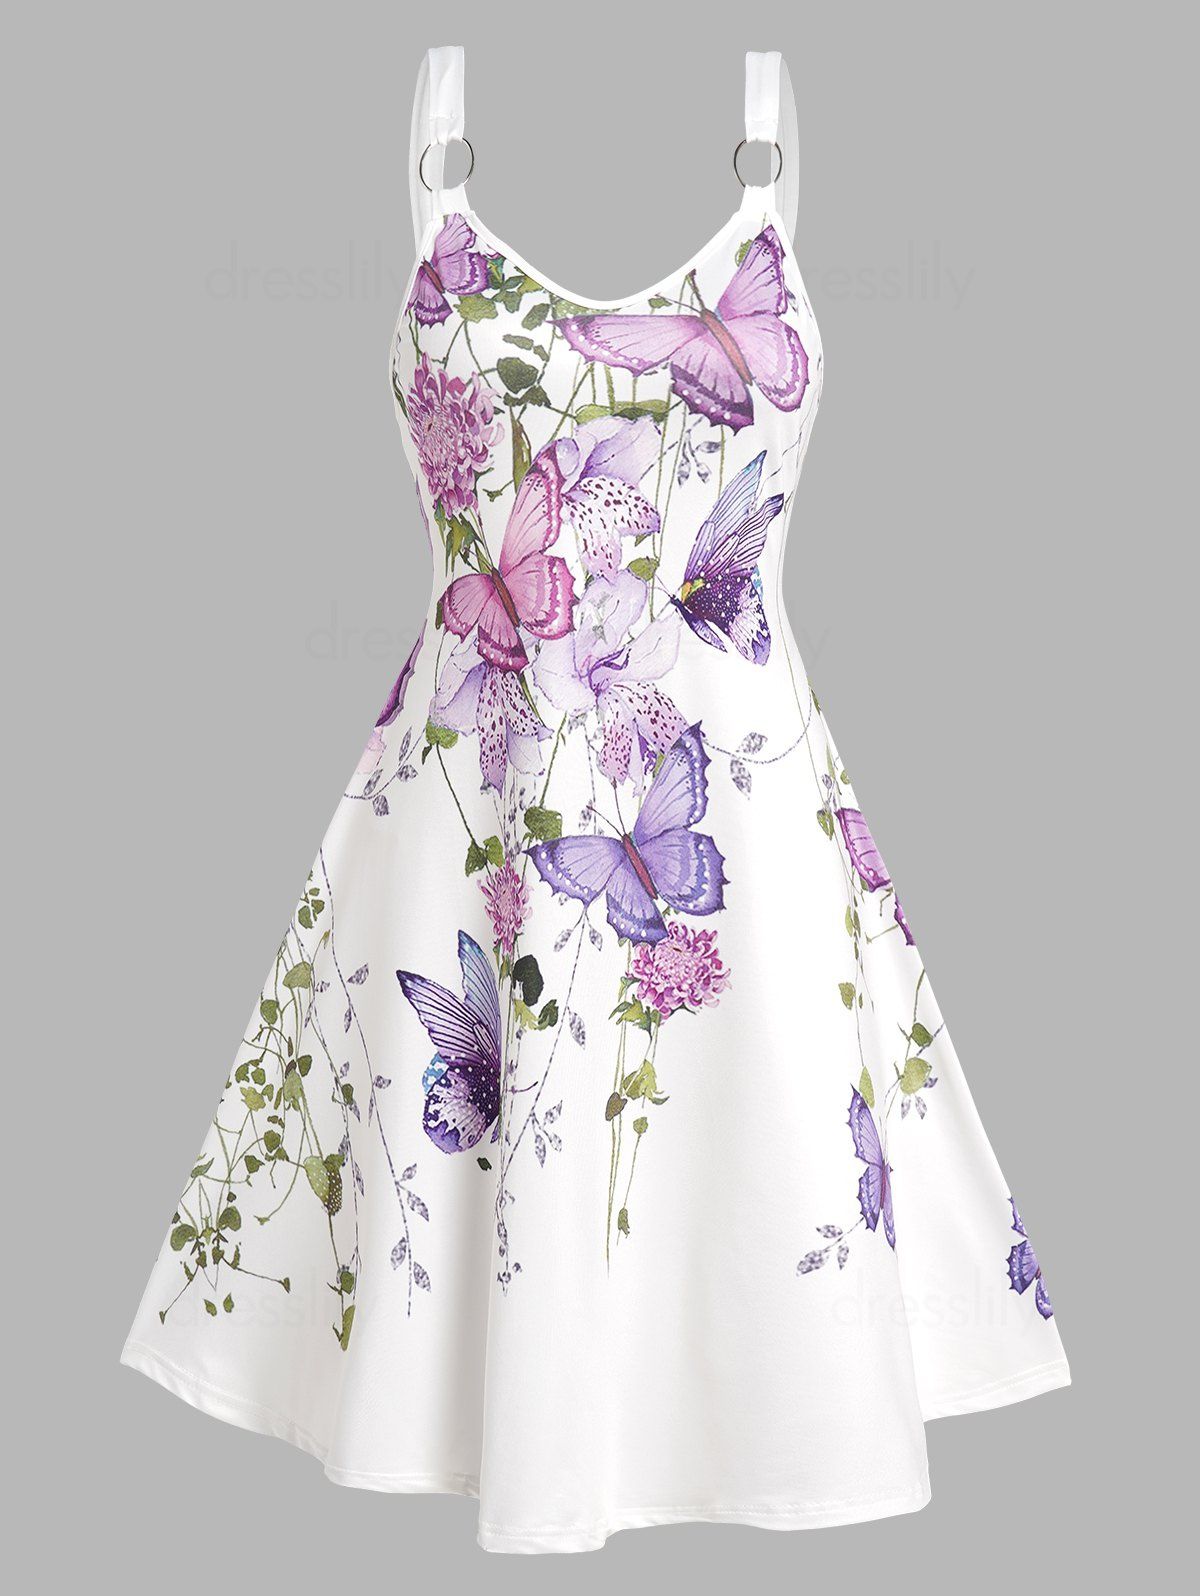 Butterfly Flower Leaf Print Cottagecore Dress Sleeveless O Ring Strap V Neck A Line Dress - LIGHT PURPLE XXL